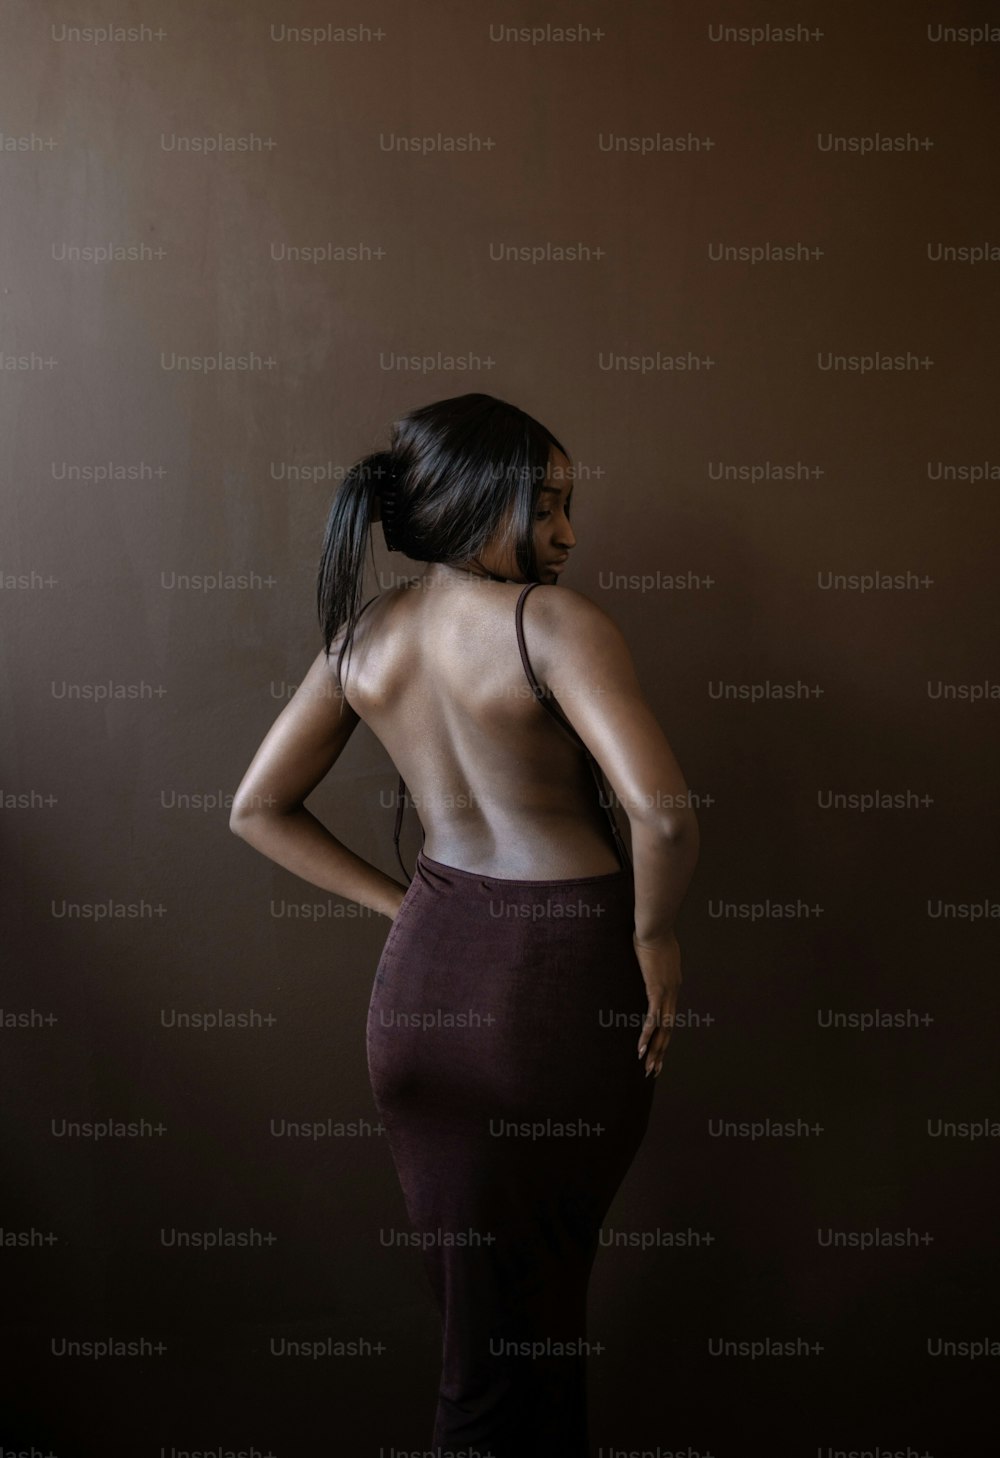 Una mujer parada en una habitación oscura de espaldas a la cámara